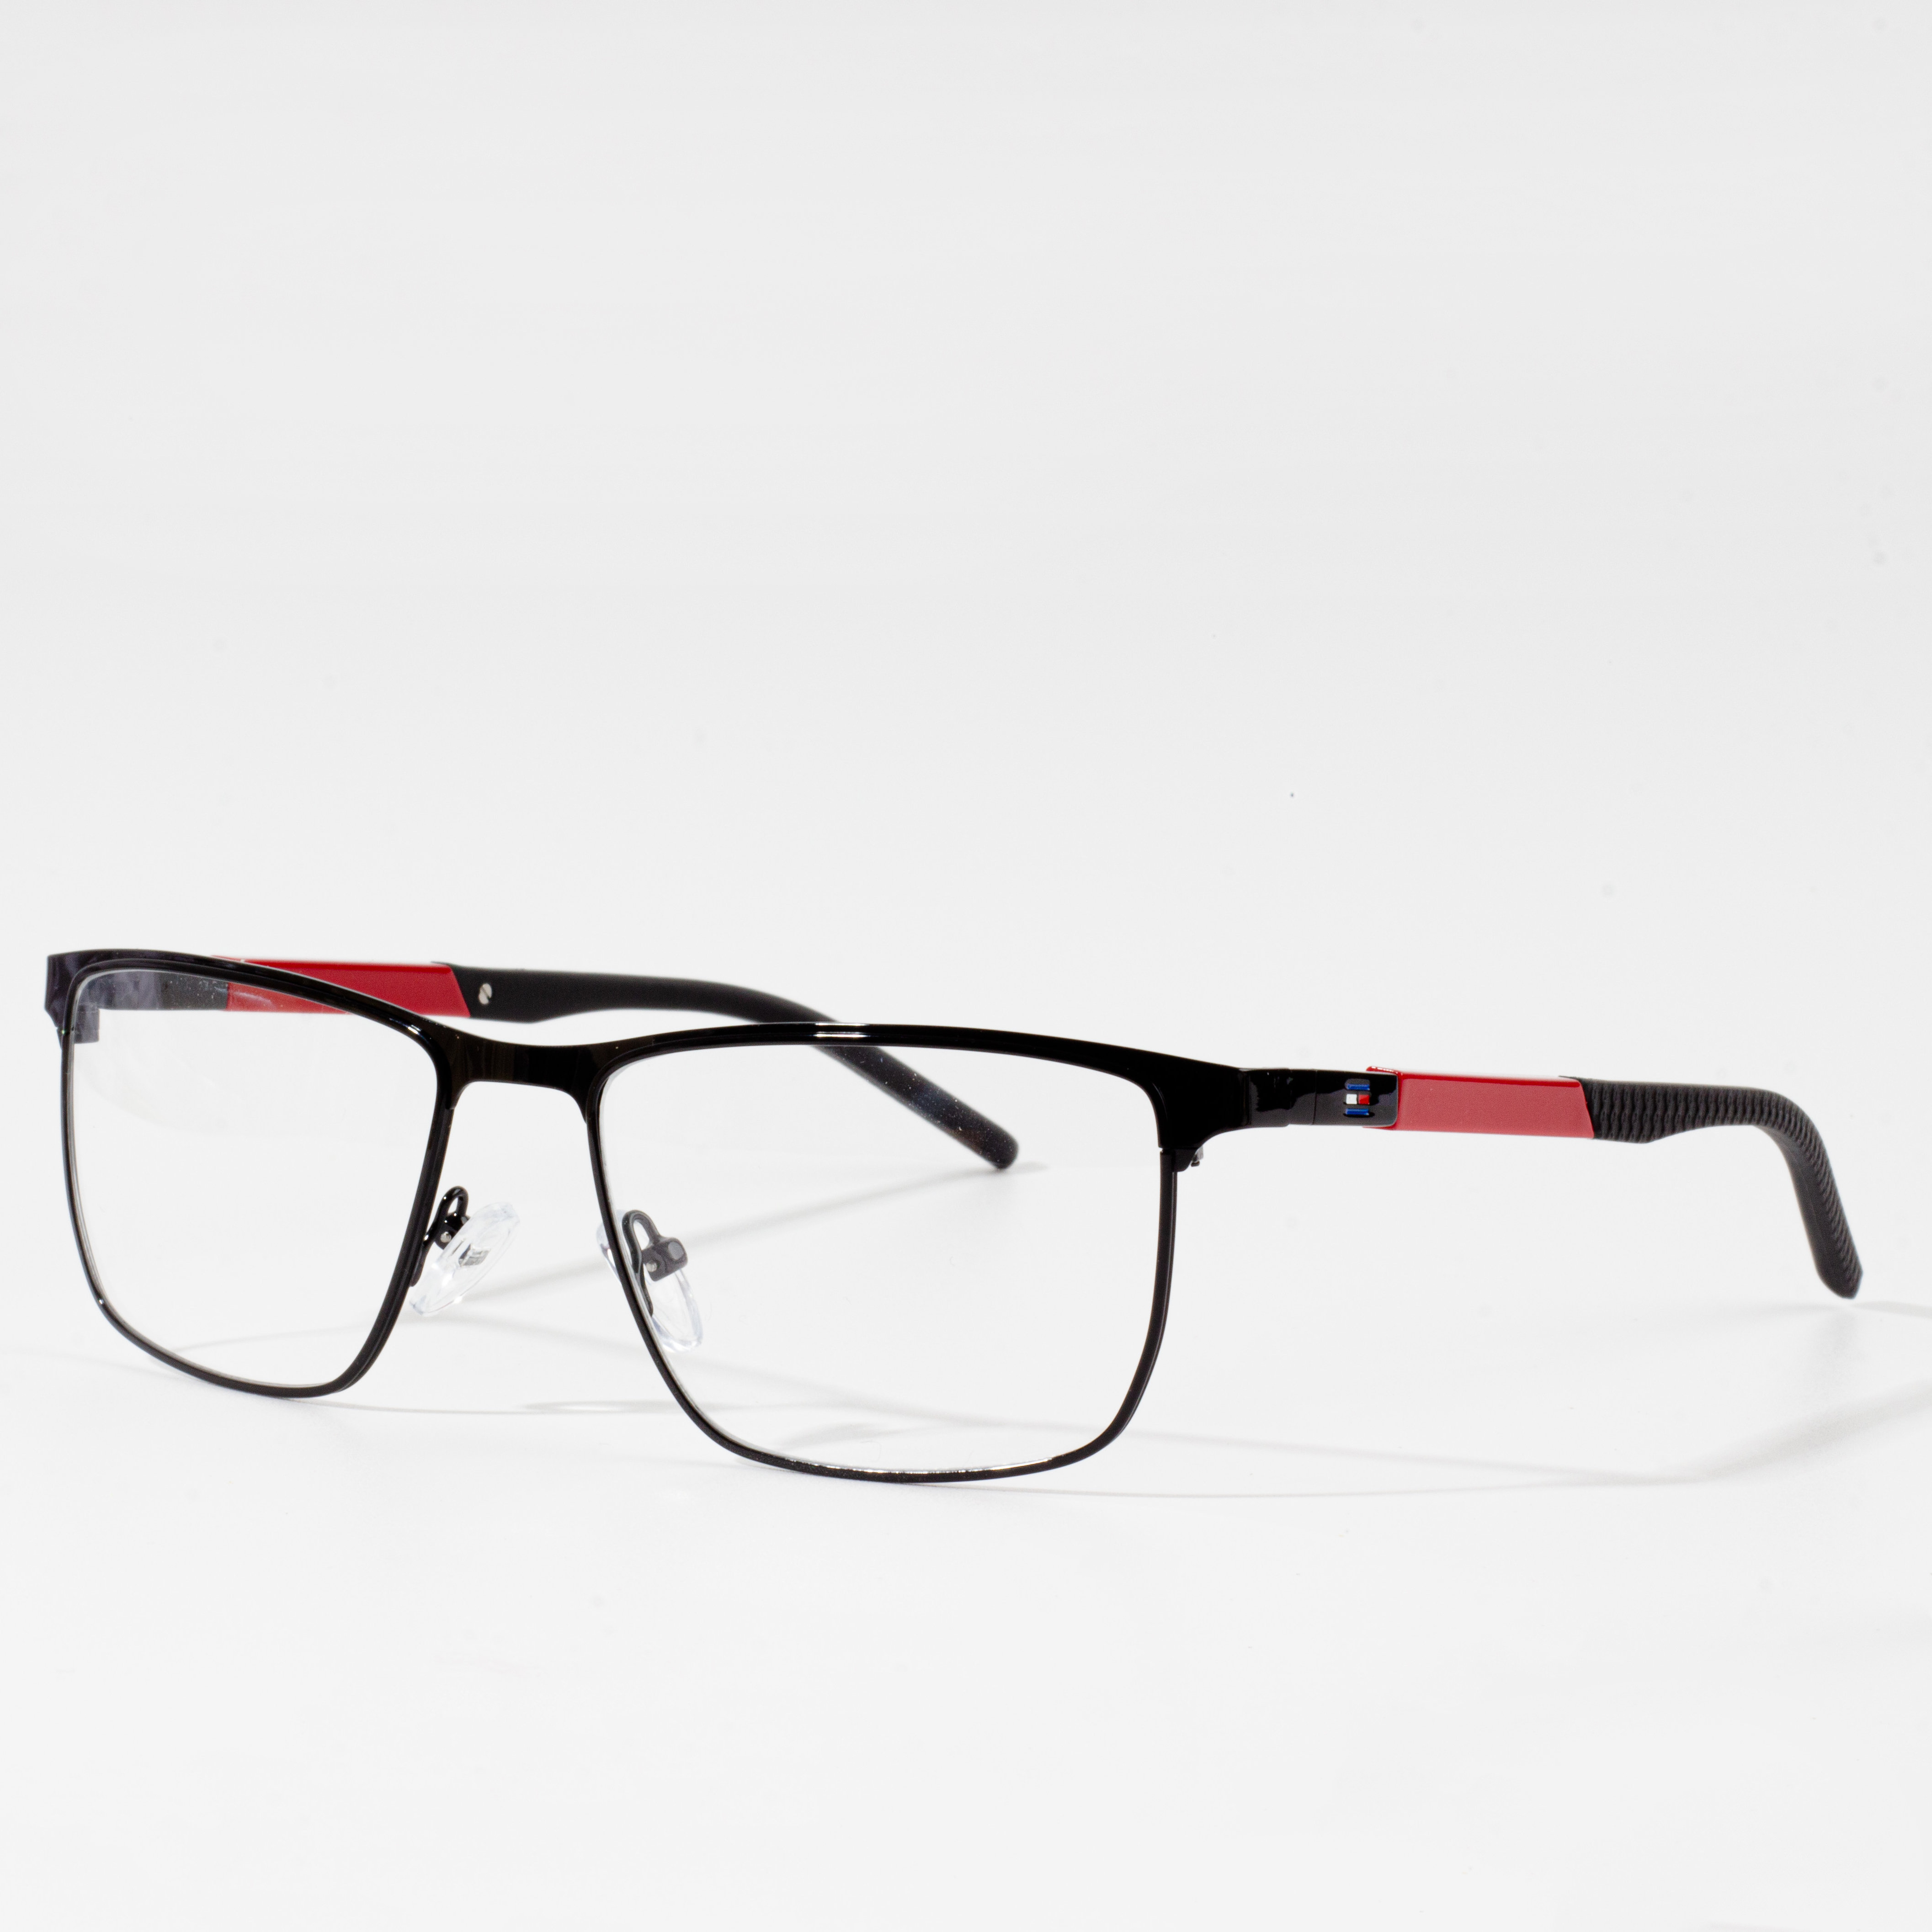 men eyeglasses frame